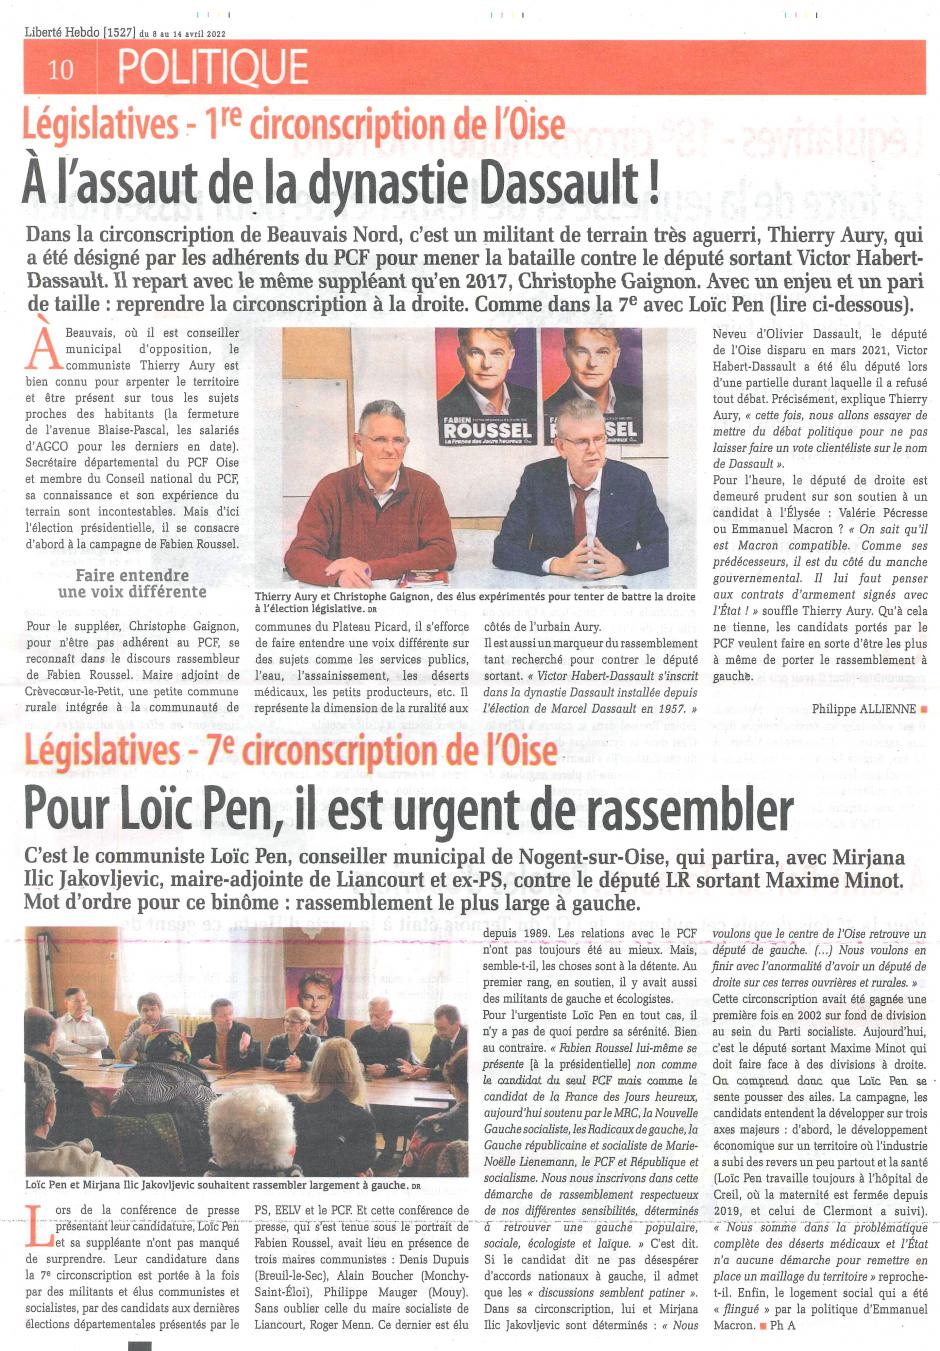 20220408-LH-Oise-Législatives 1re circonscription : à l'assaut de la dynastie Dassault !